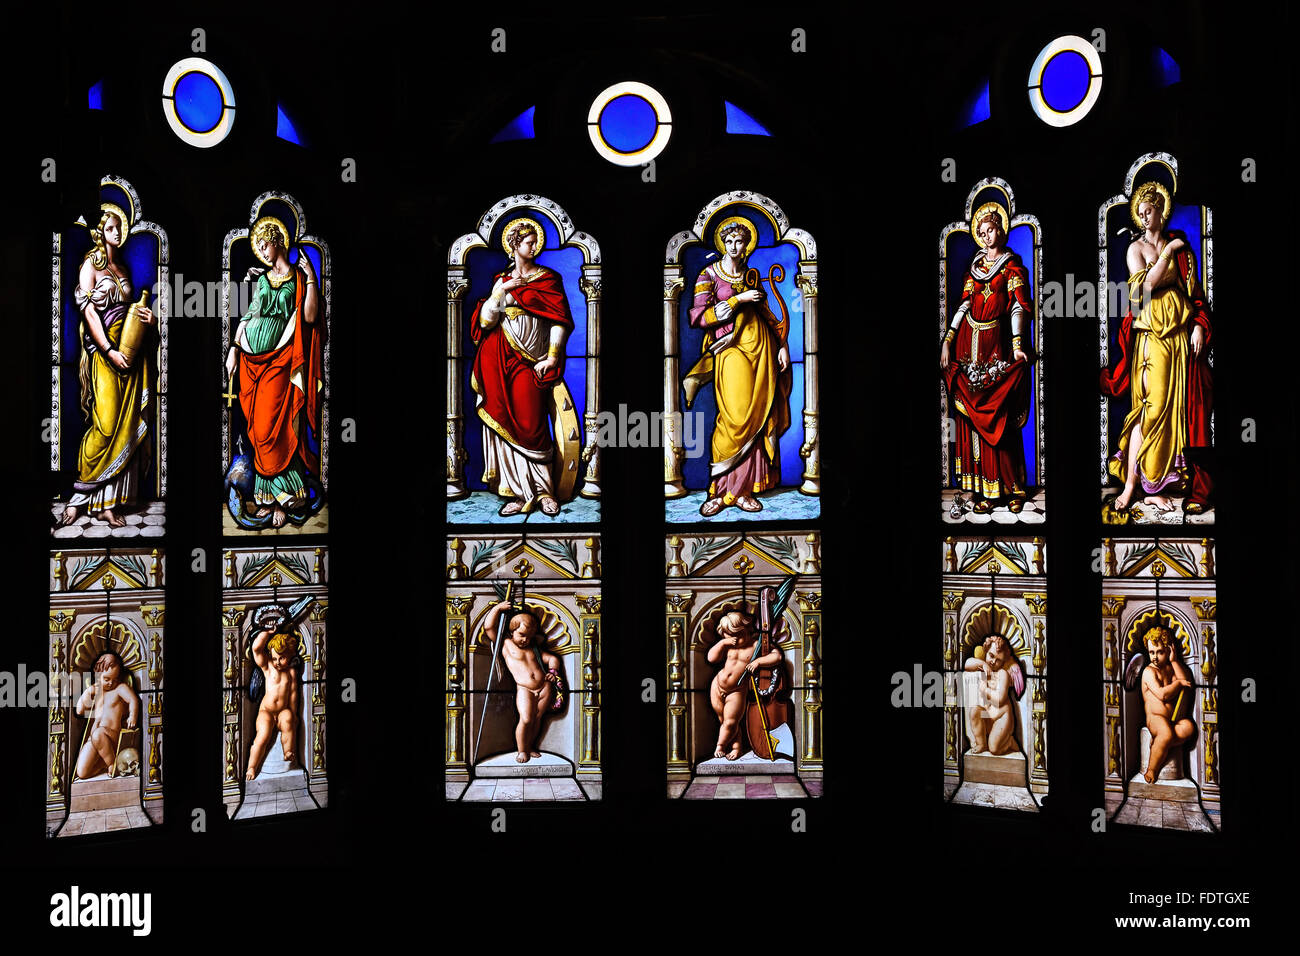 Fenster - Glasmalerei in der Kapelle - Chateau de Blois Frankreich Französisch verbleit Stockfoto